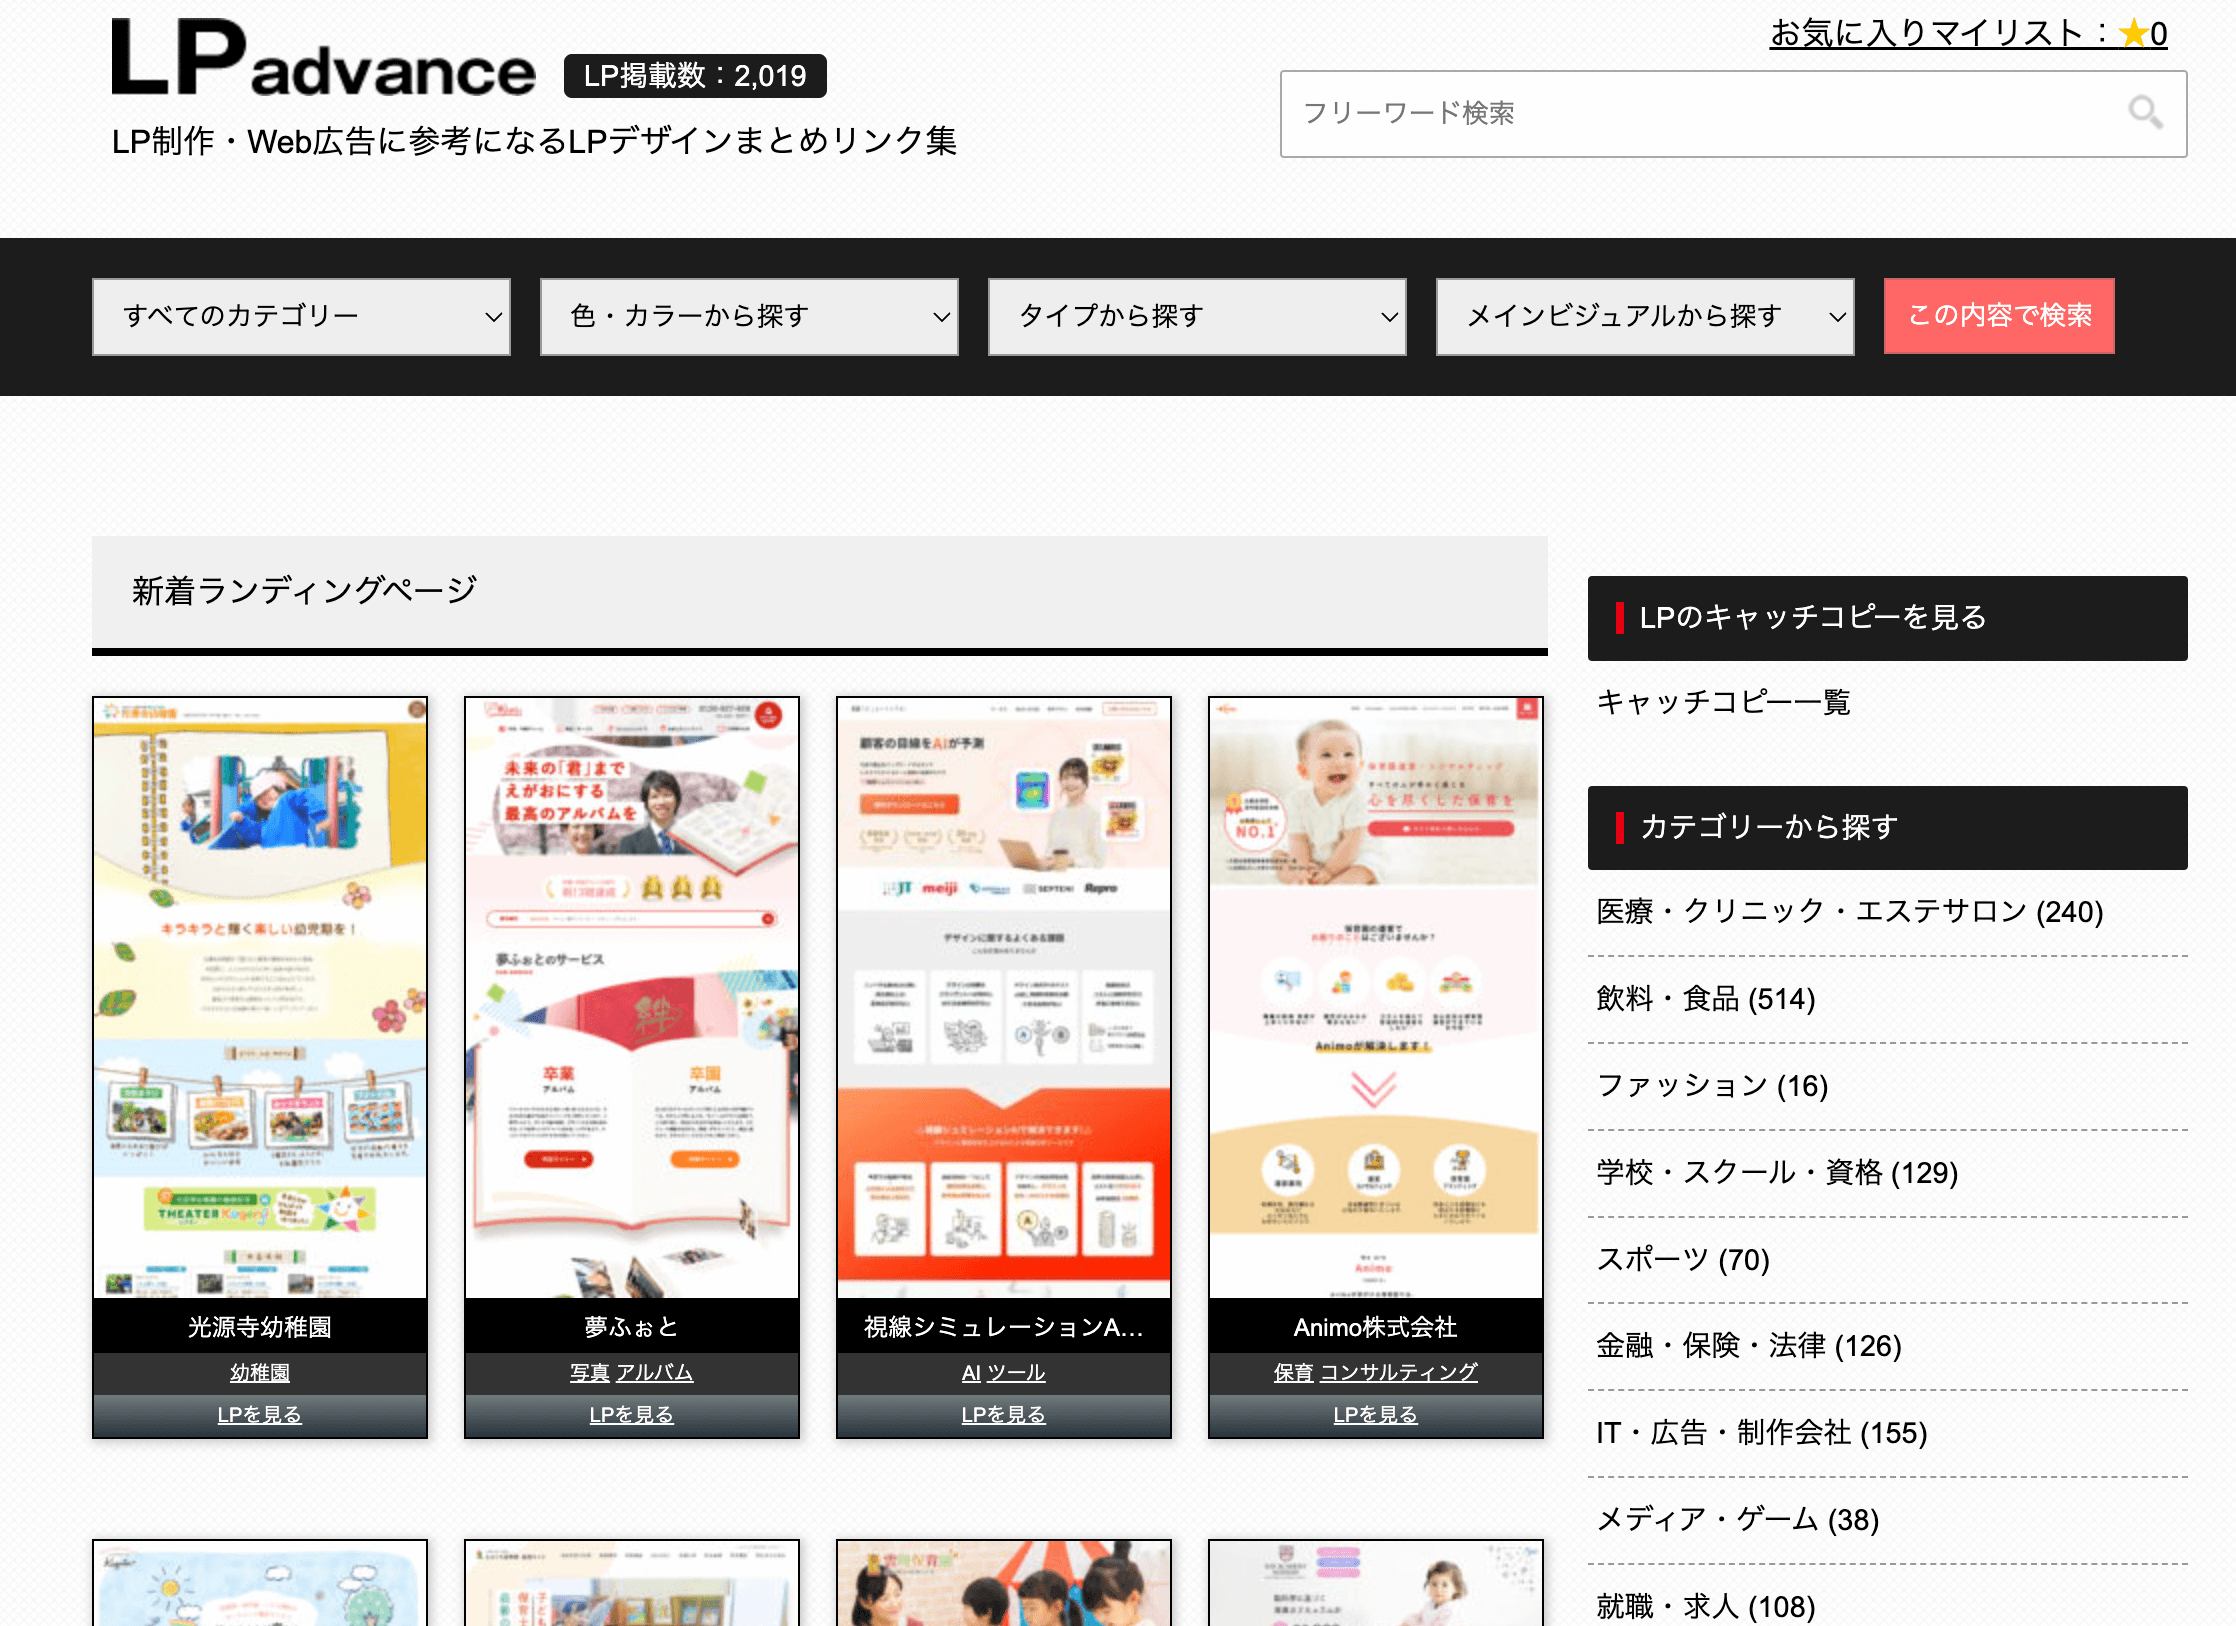 LPadvanceのMV画像